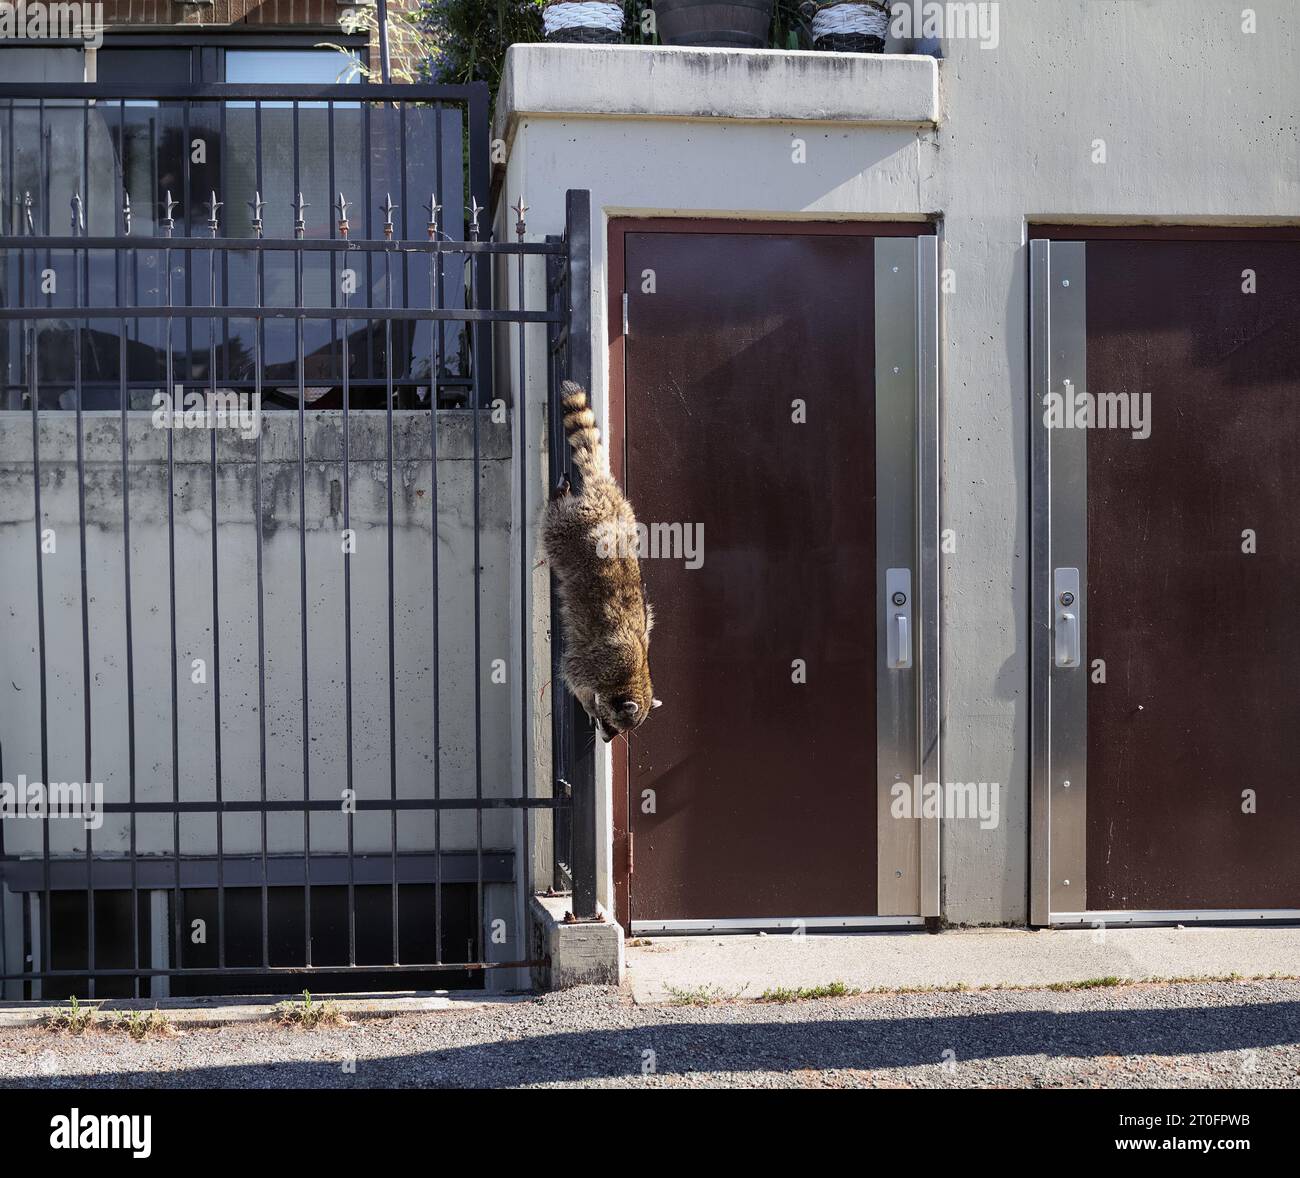 Städtischer Waschbär klettert senkrecht einen Zaun hinunter. Waschbär in Bewegung, verlässt das Gebäude nach unten entlang eines Metallgeländes. Urbane Tierwelt und Co-Residence mit Stockfoto